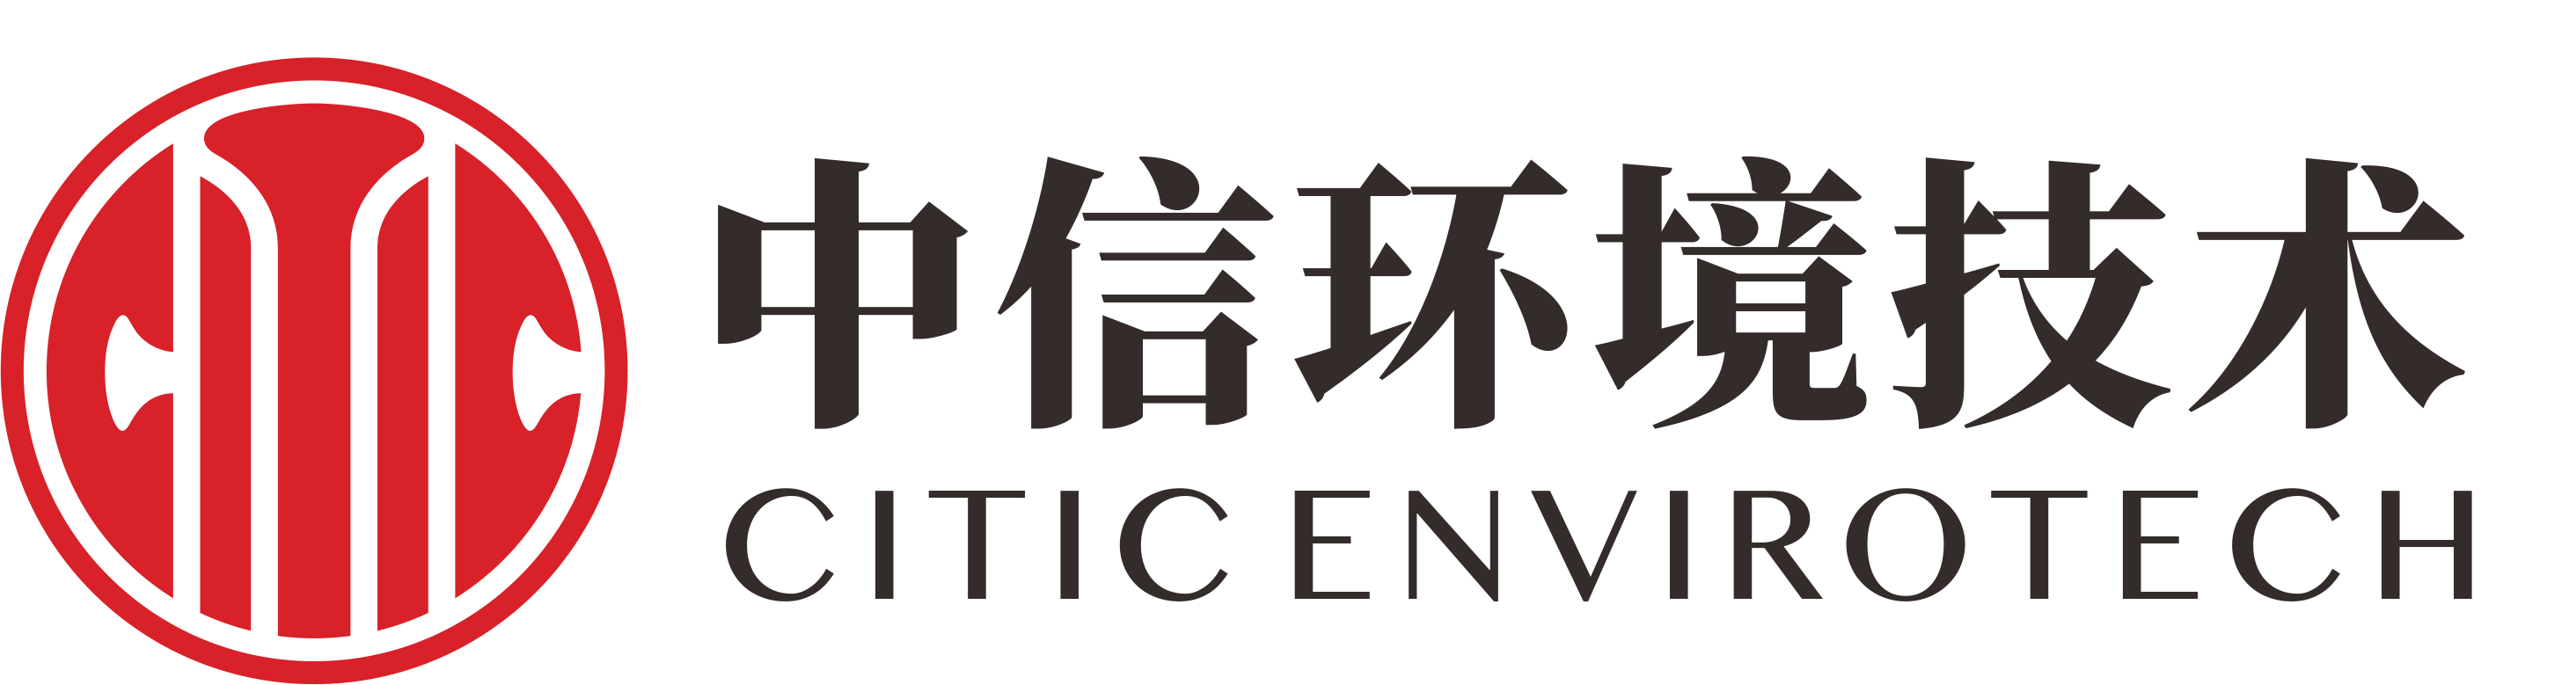 香港最快最准 Logo